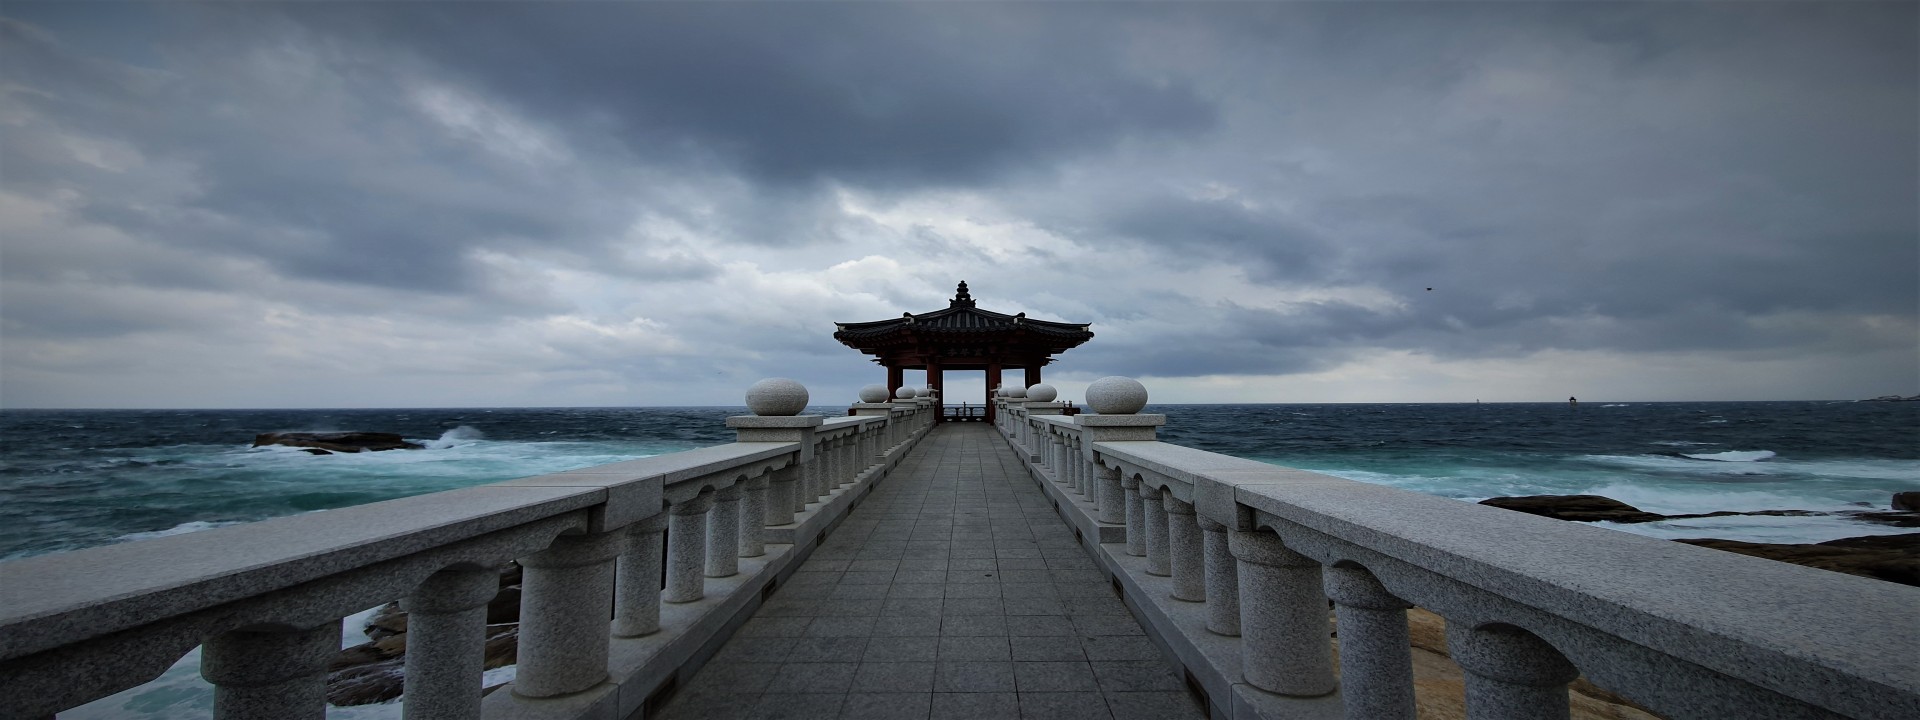 Im Vordergrund, mittig im Bild, sieht man eine Hafenmole aus Marmor. Am Ender der Mole steht ein typischer chinesicher Pavillon. Im Hintergrund aufgewühltes Meer und stark bewölkter Himmel. 